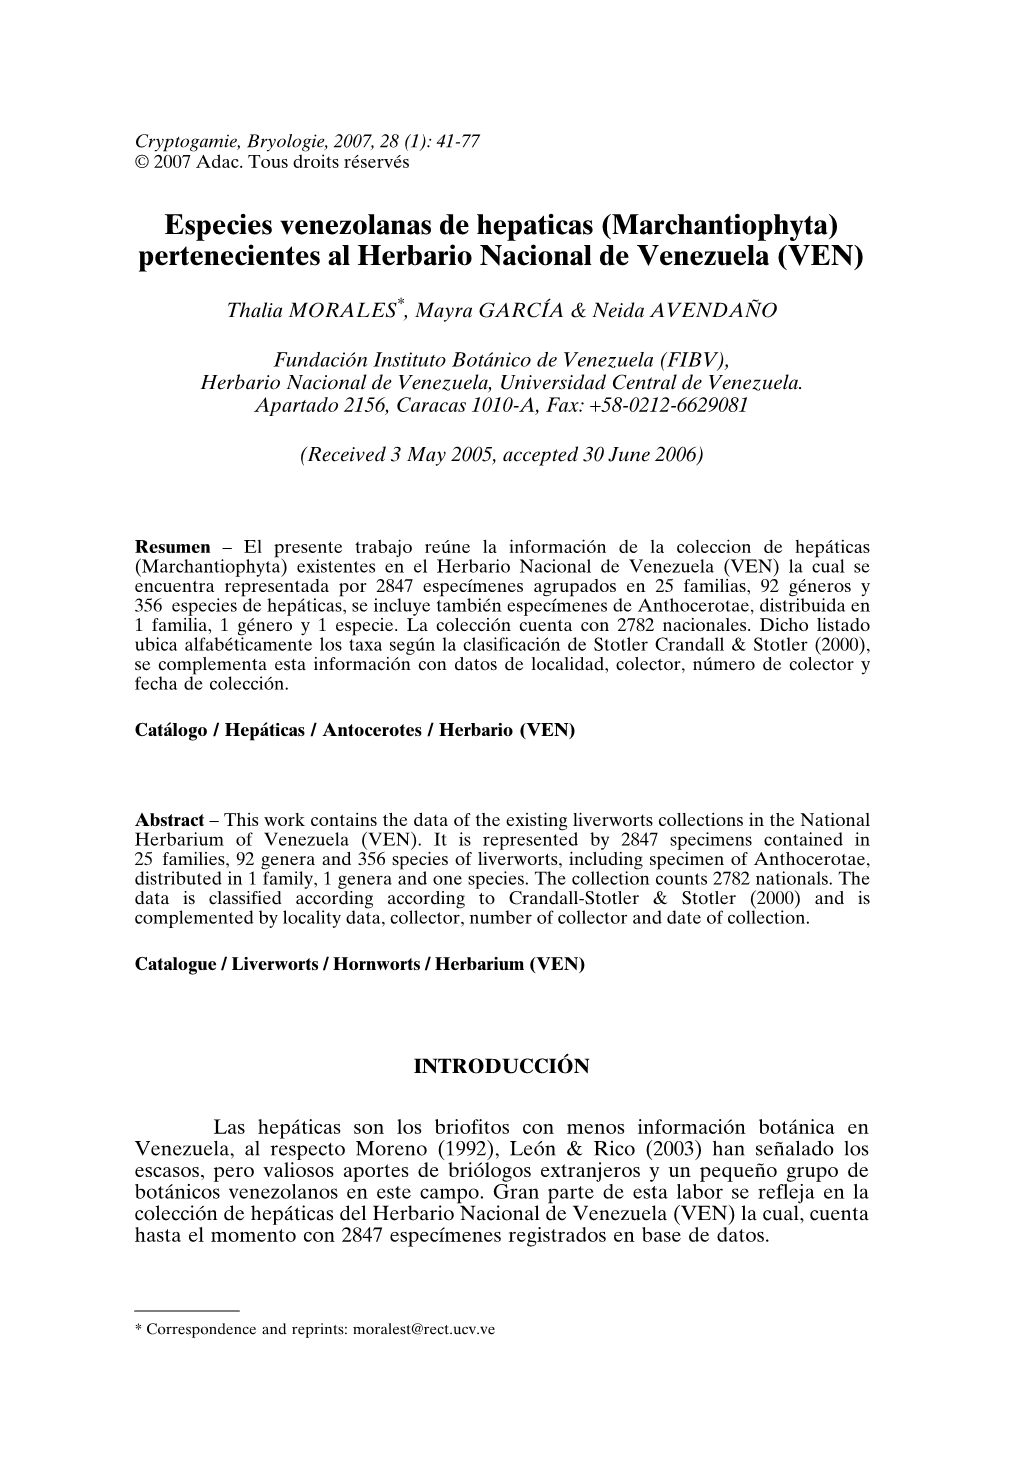 Especies Venezolanas De Hepaticas (Marchantiophyta) Pertenecientes Al Herbario Nacional De Venezuela (VEN)